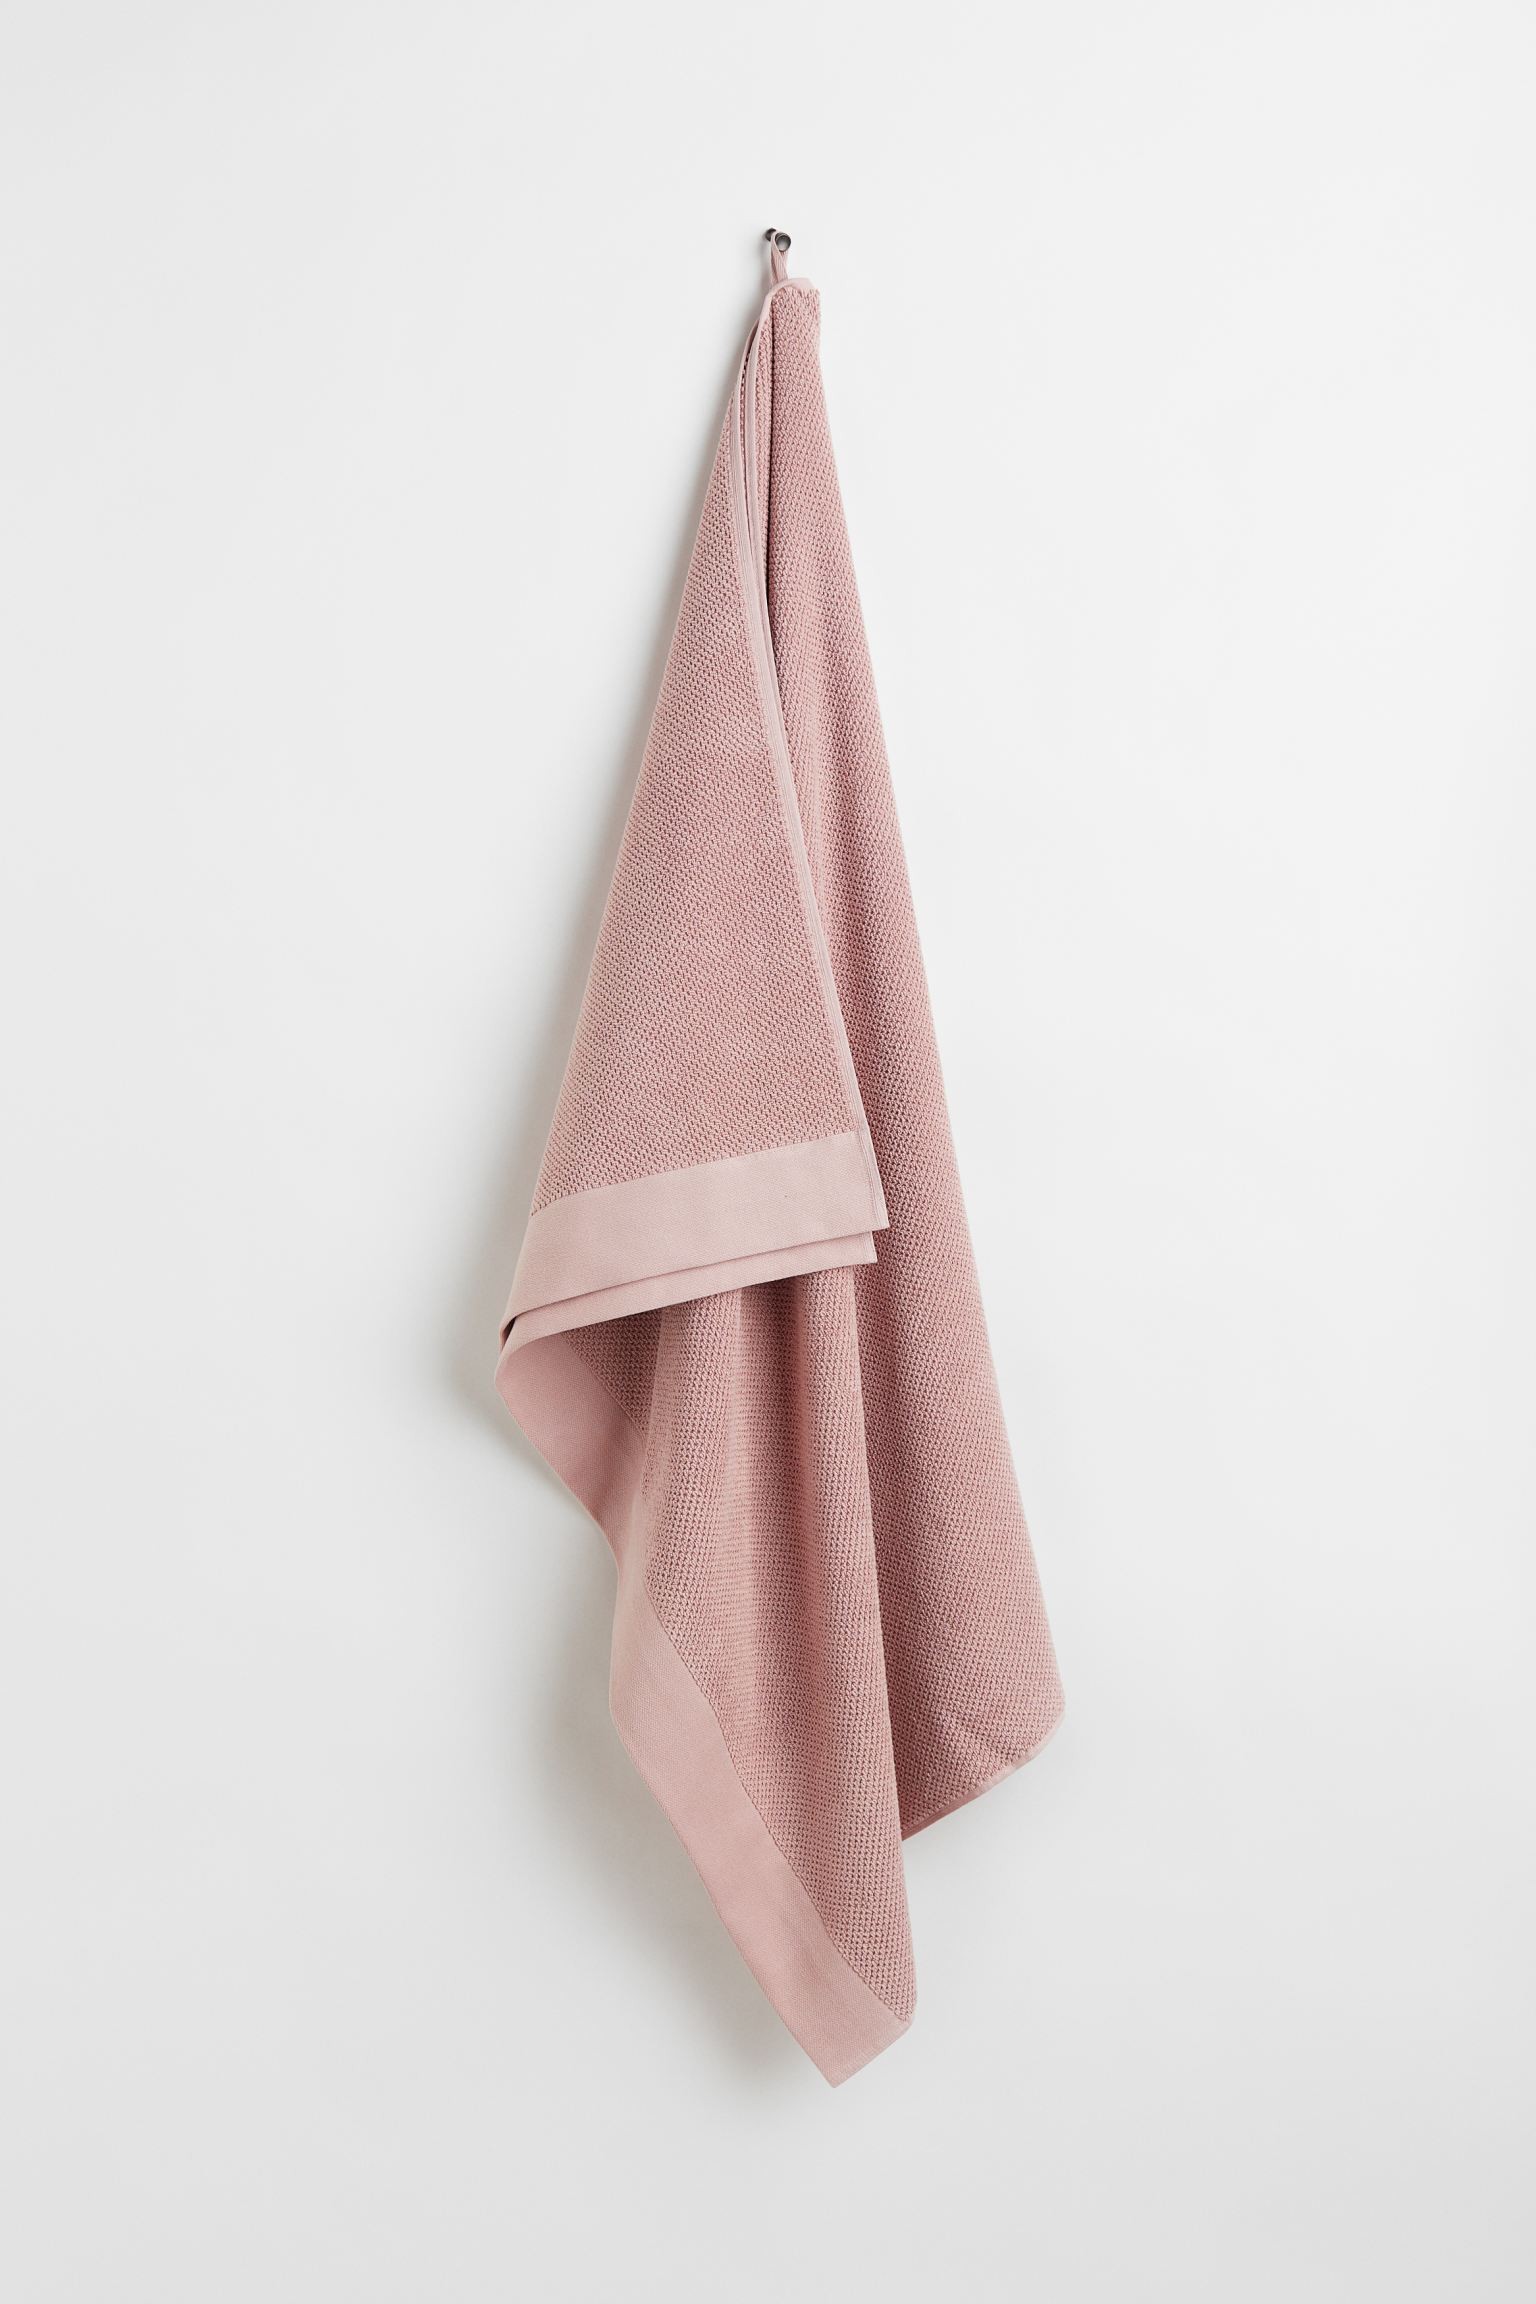 H&M Home Большое банное полотенце из хлопковой махры, светло-розовый, 100x150 1097301009 | 1097301009